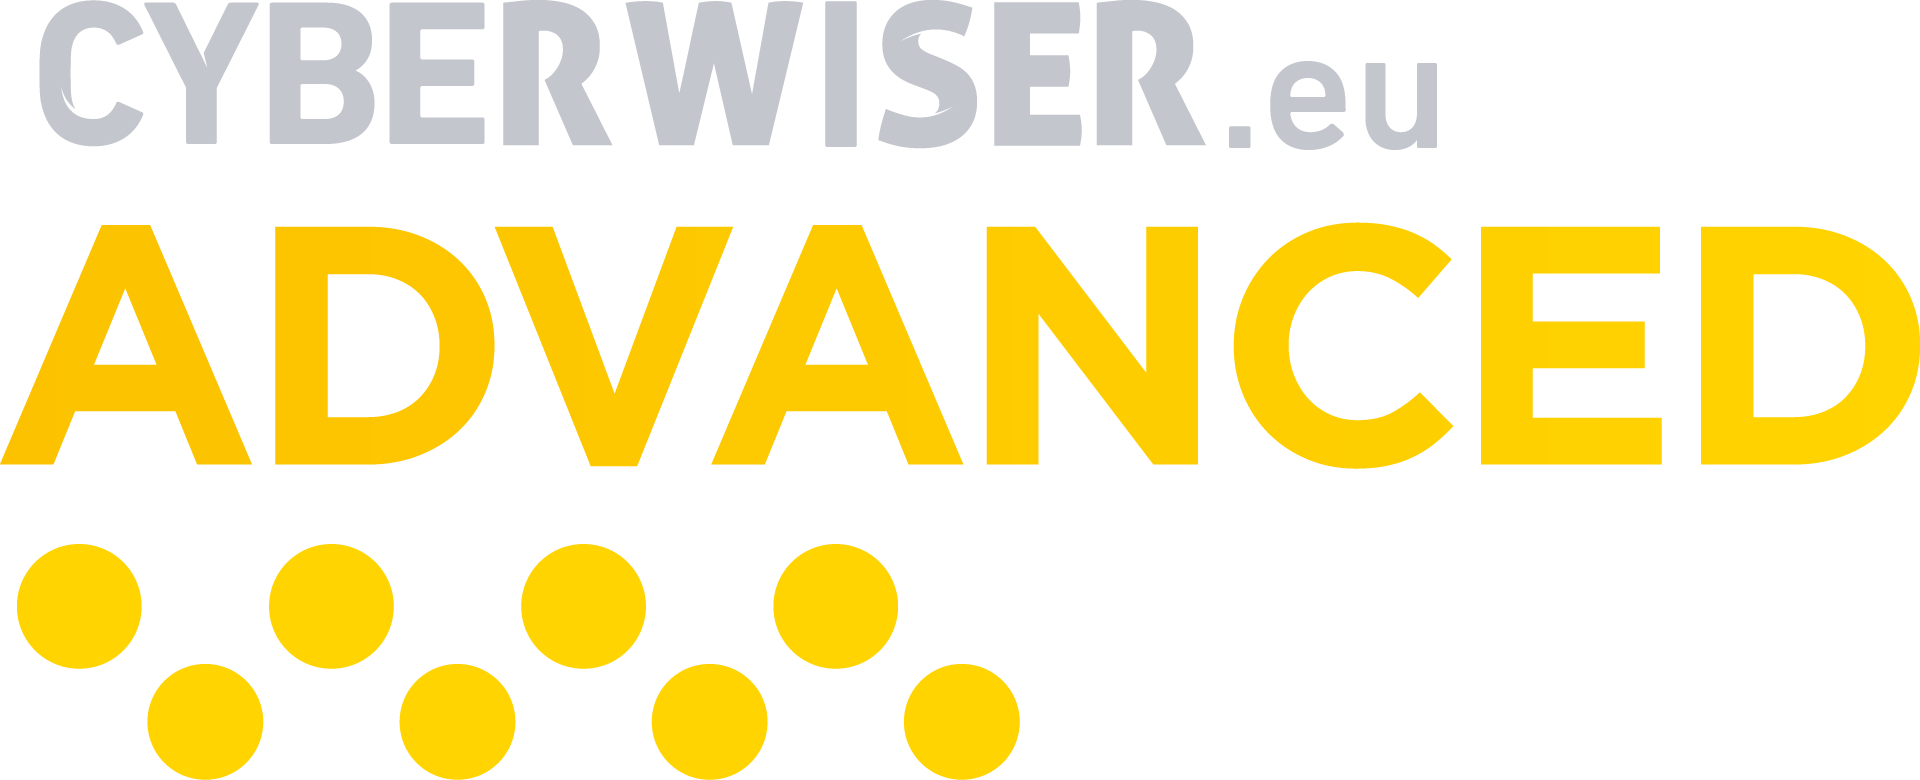 CYBERWISER.eu ADVANCED